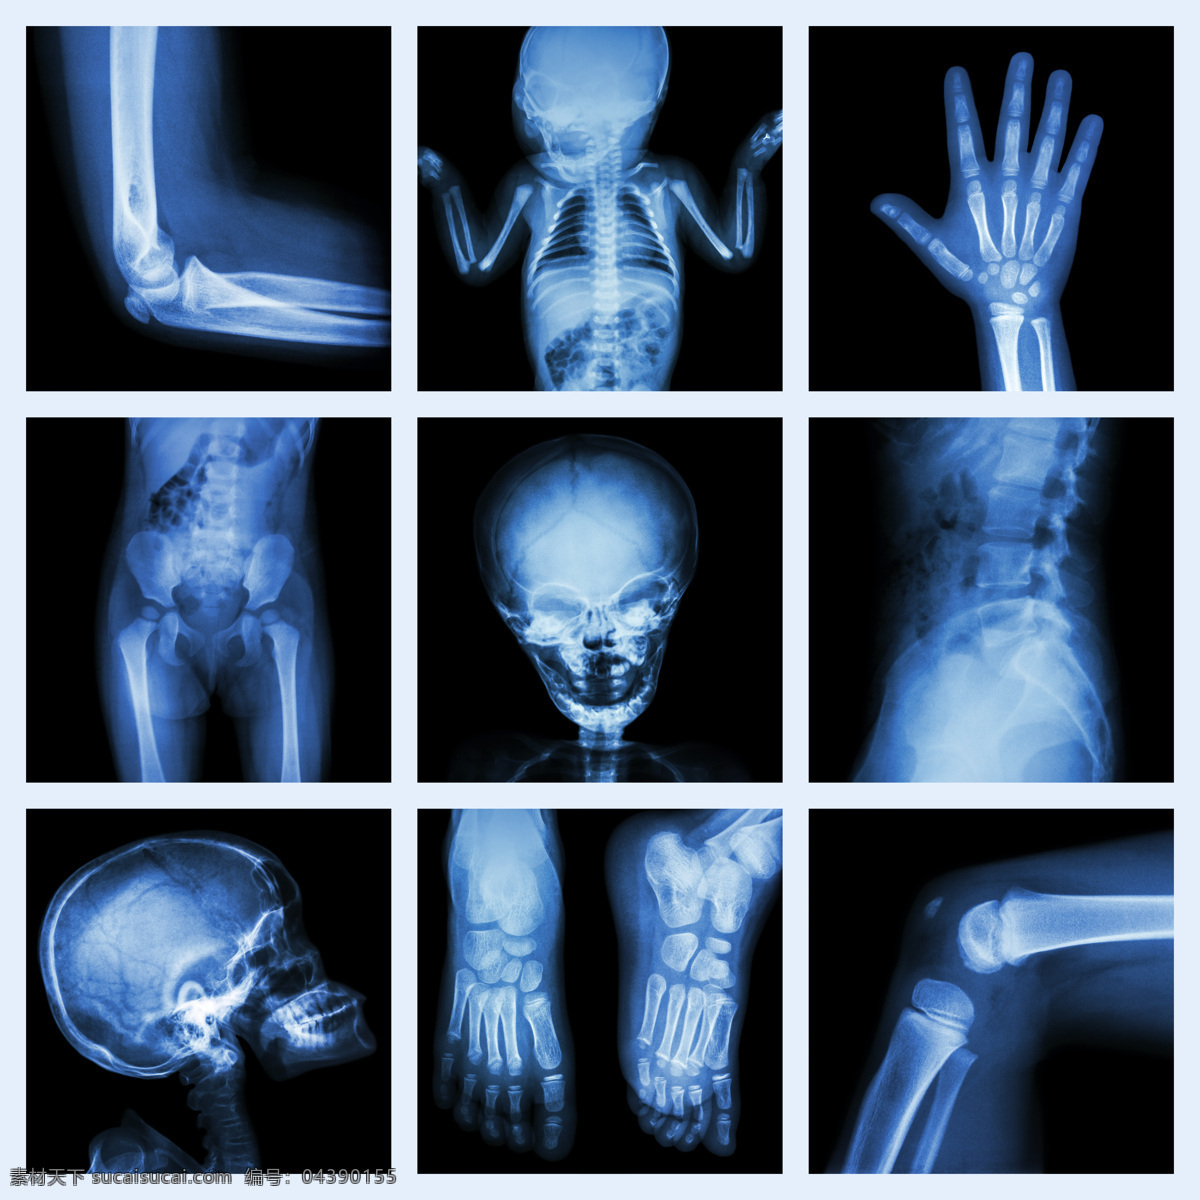 人体 各种 部门 透视图 医疗护理 医学研究 x光片 x光片图片 x 光 片 医疗 拍片 医学研究素材 护理 图片库 光片 轮廓 透视 医用 结构 骨骼 现代科技